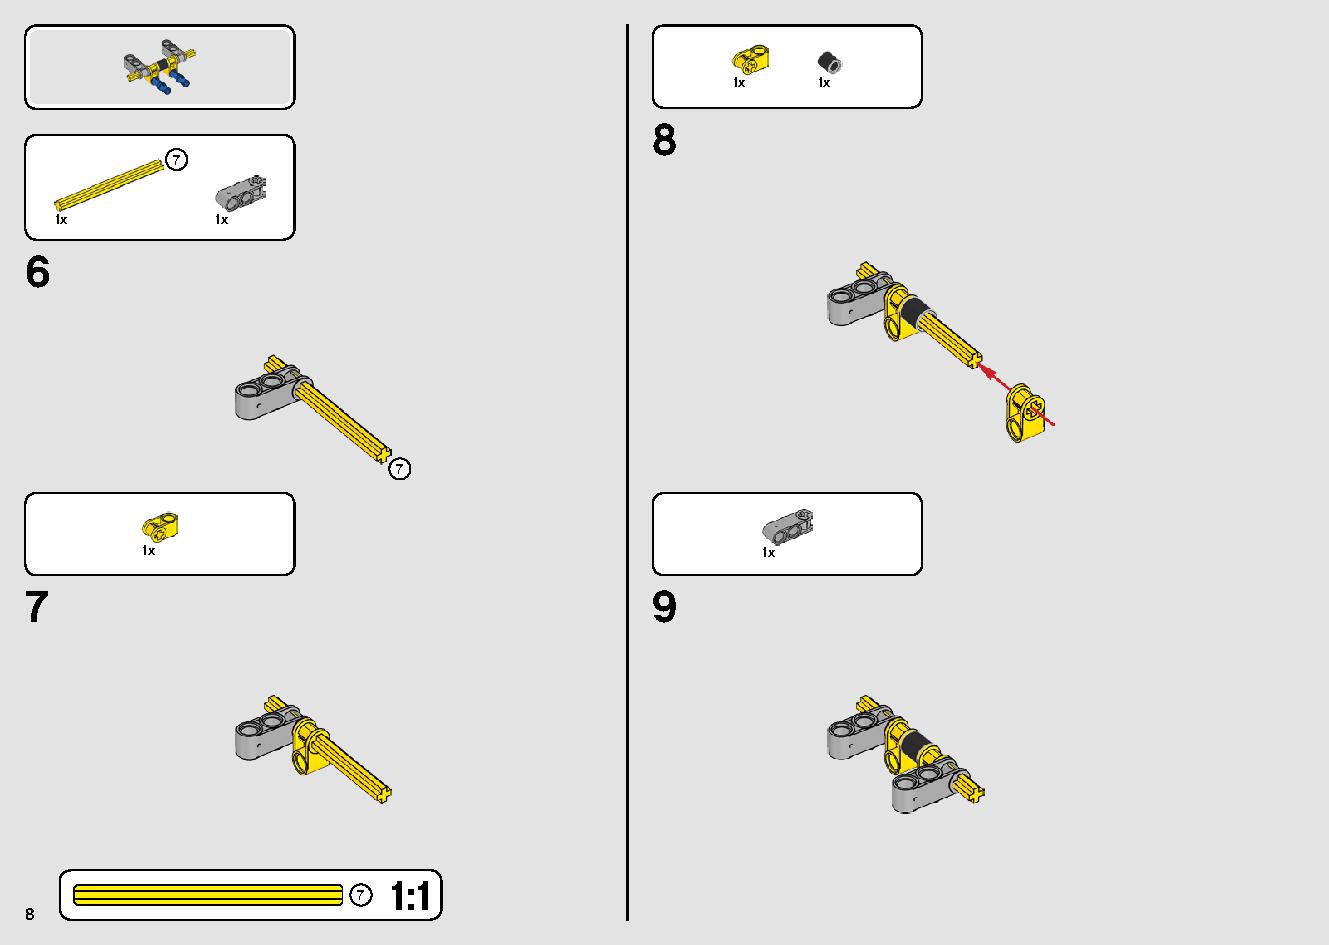 移動式クレーン車 42108 レゴの商品情報 レゴの説明書・組立方法 8 page